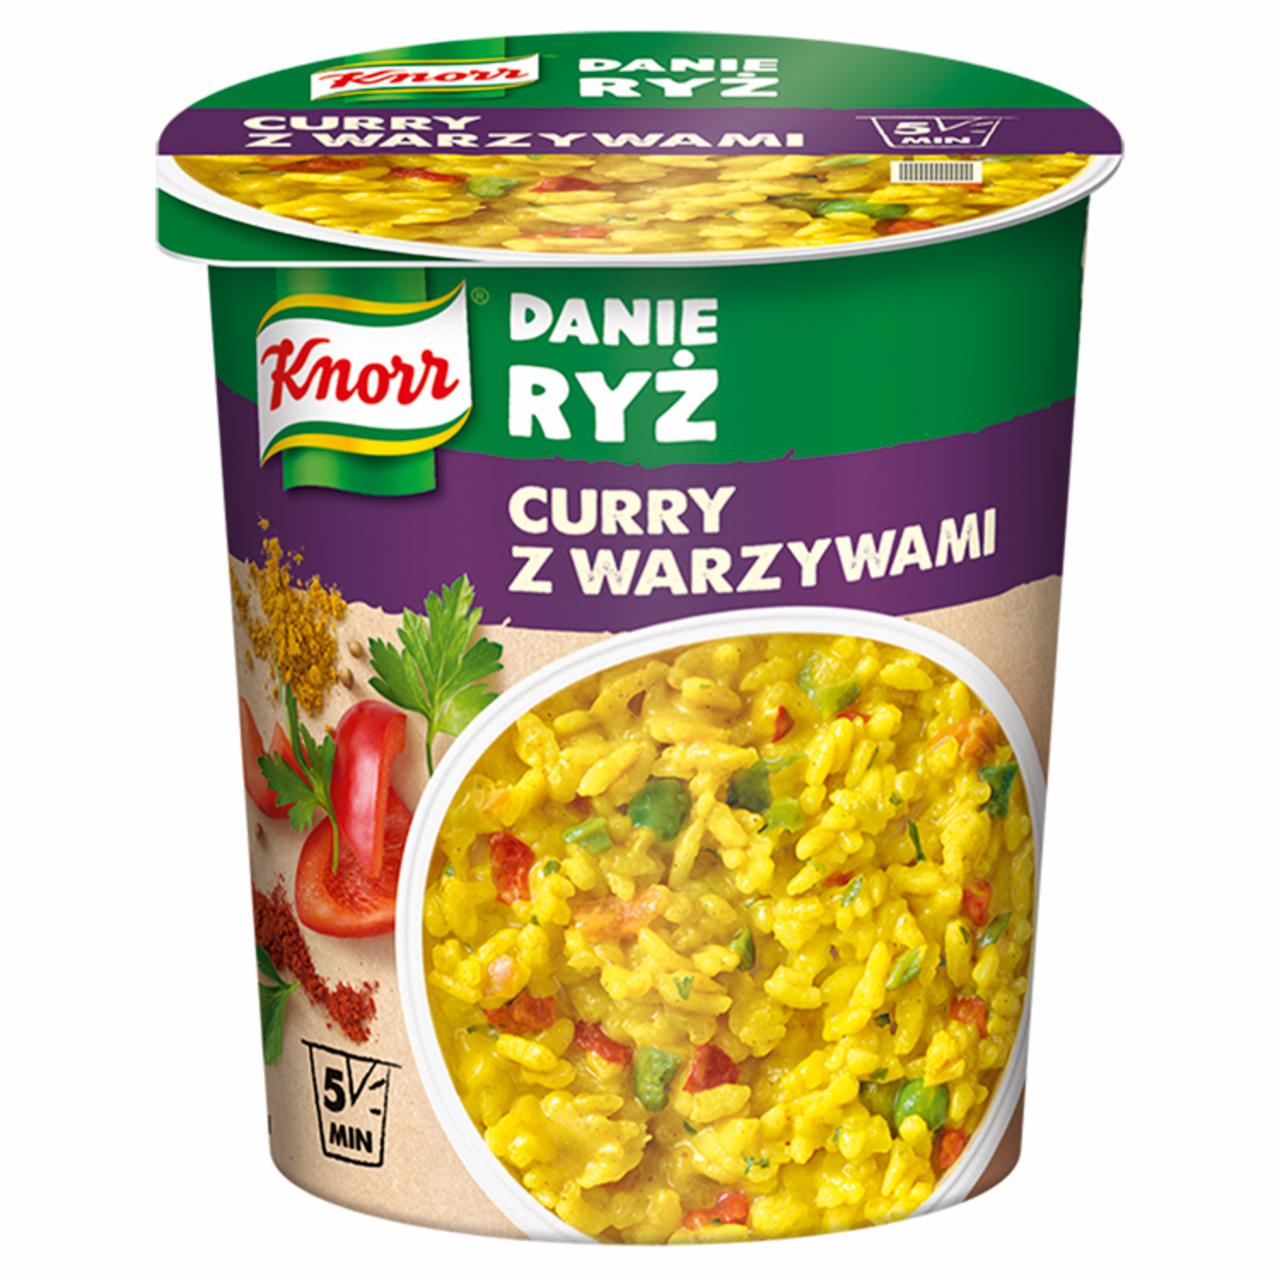 Zdjęcia - Knorr Danie ryż curry z warzywami 73 g